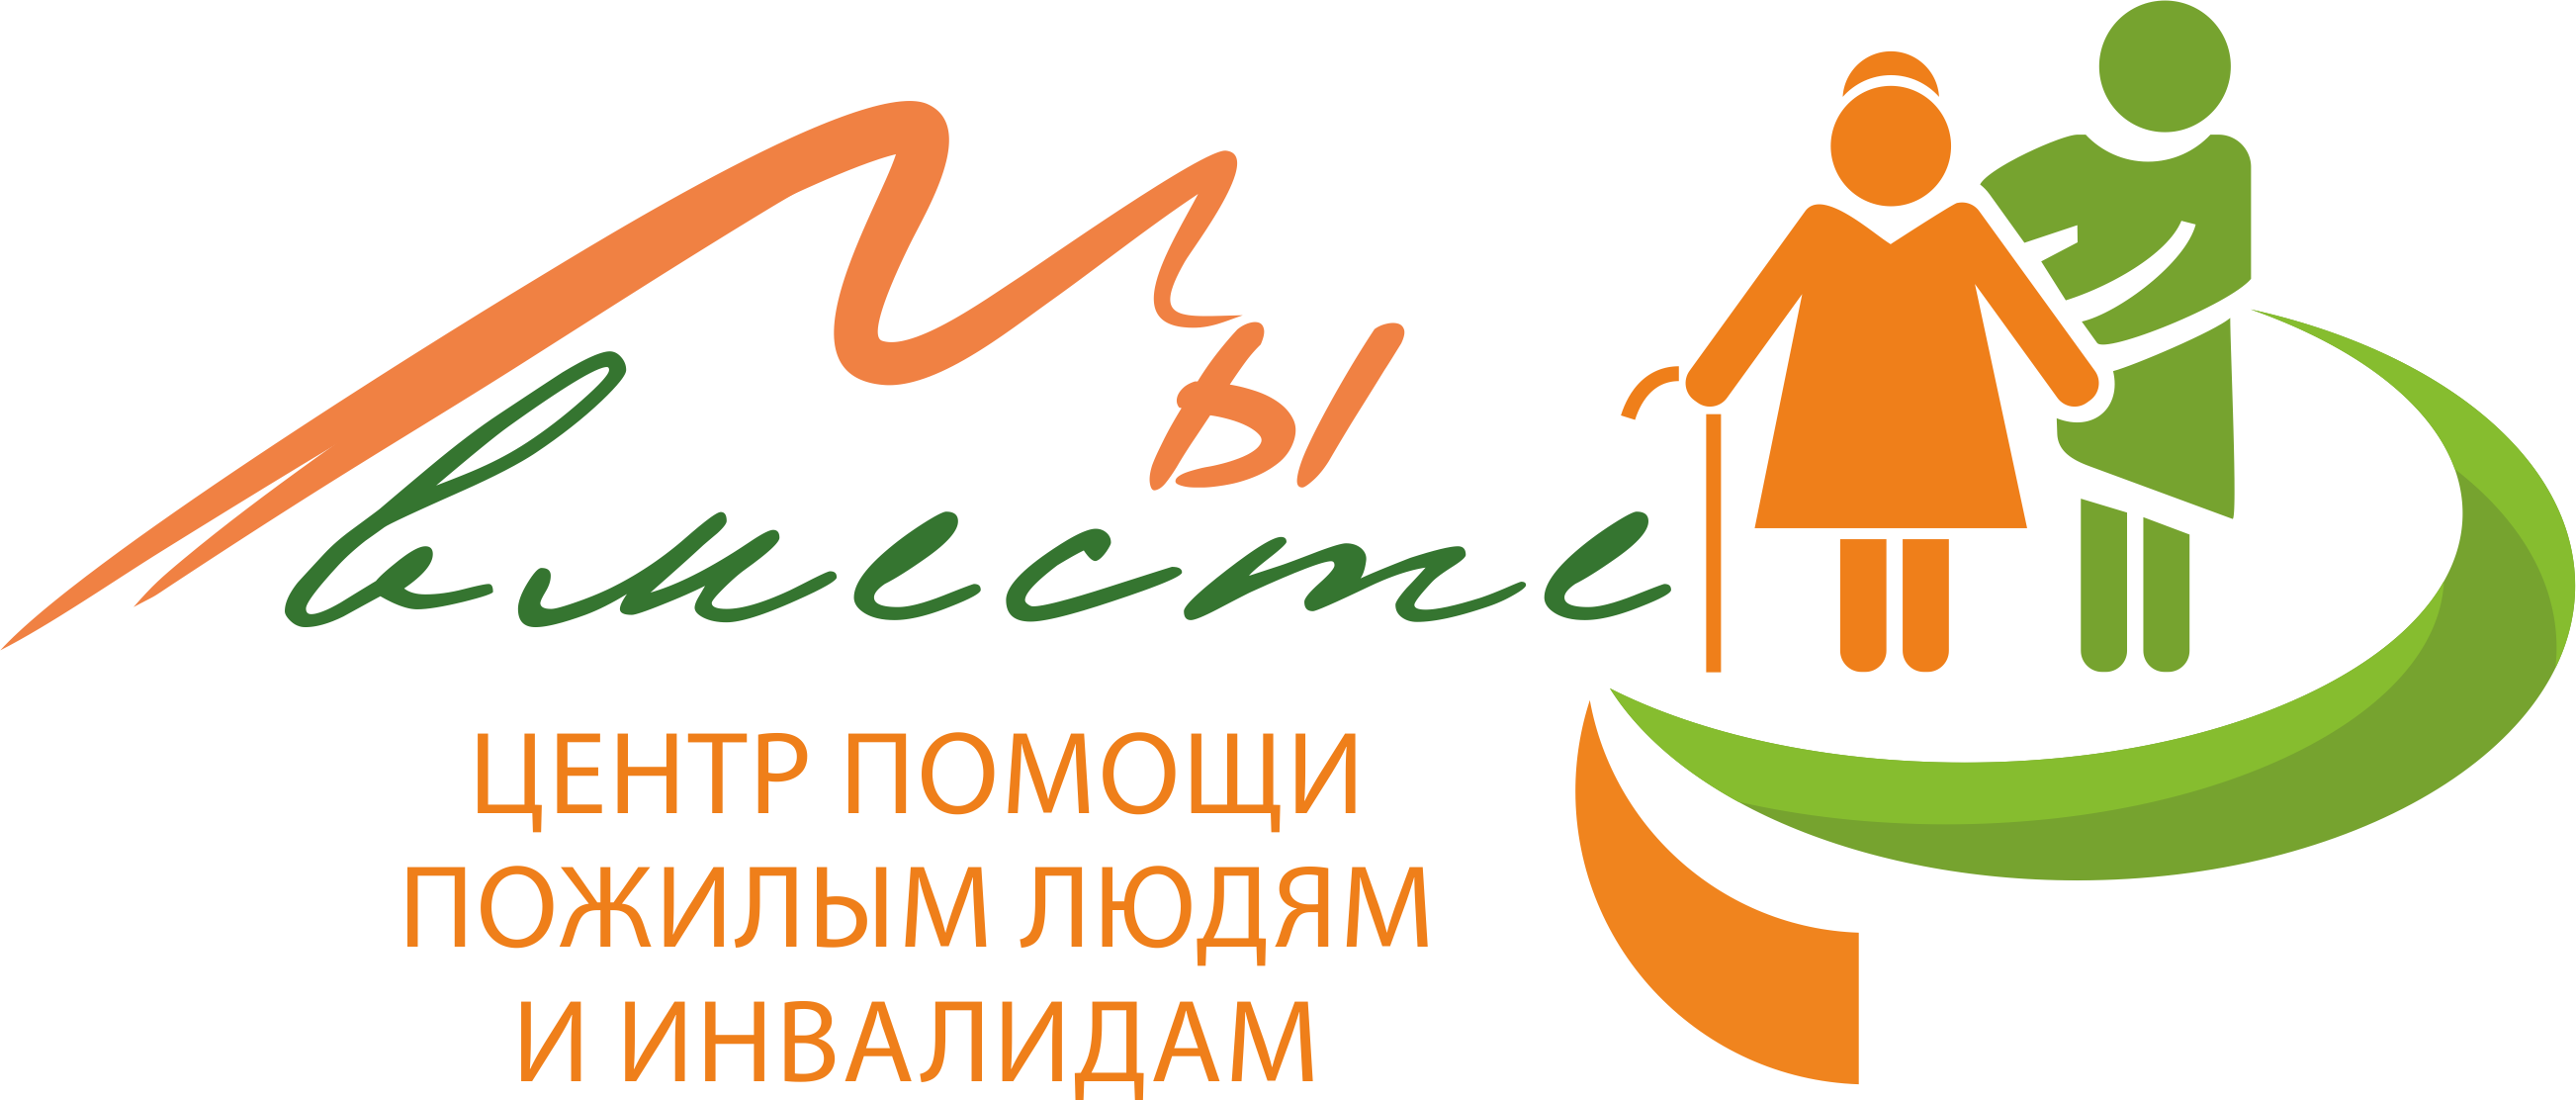 Благотворительные организации инвалидов. Эмблема для престарелых и инвалидов. Логотип пожилые люди. Помощь пожилым логотип. Эмблема для Стариков и инвалидов.